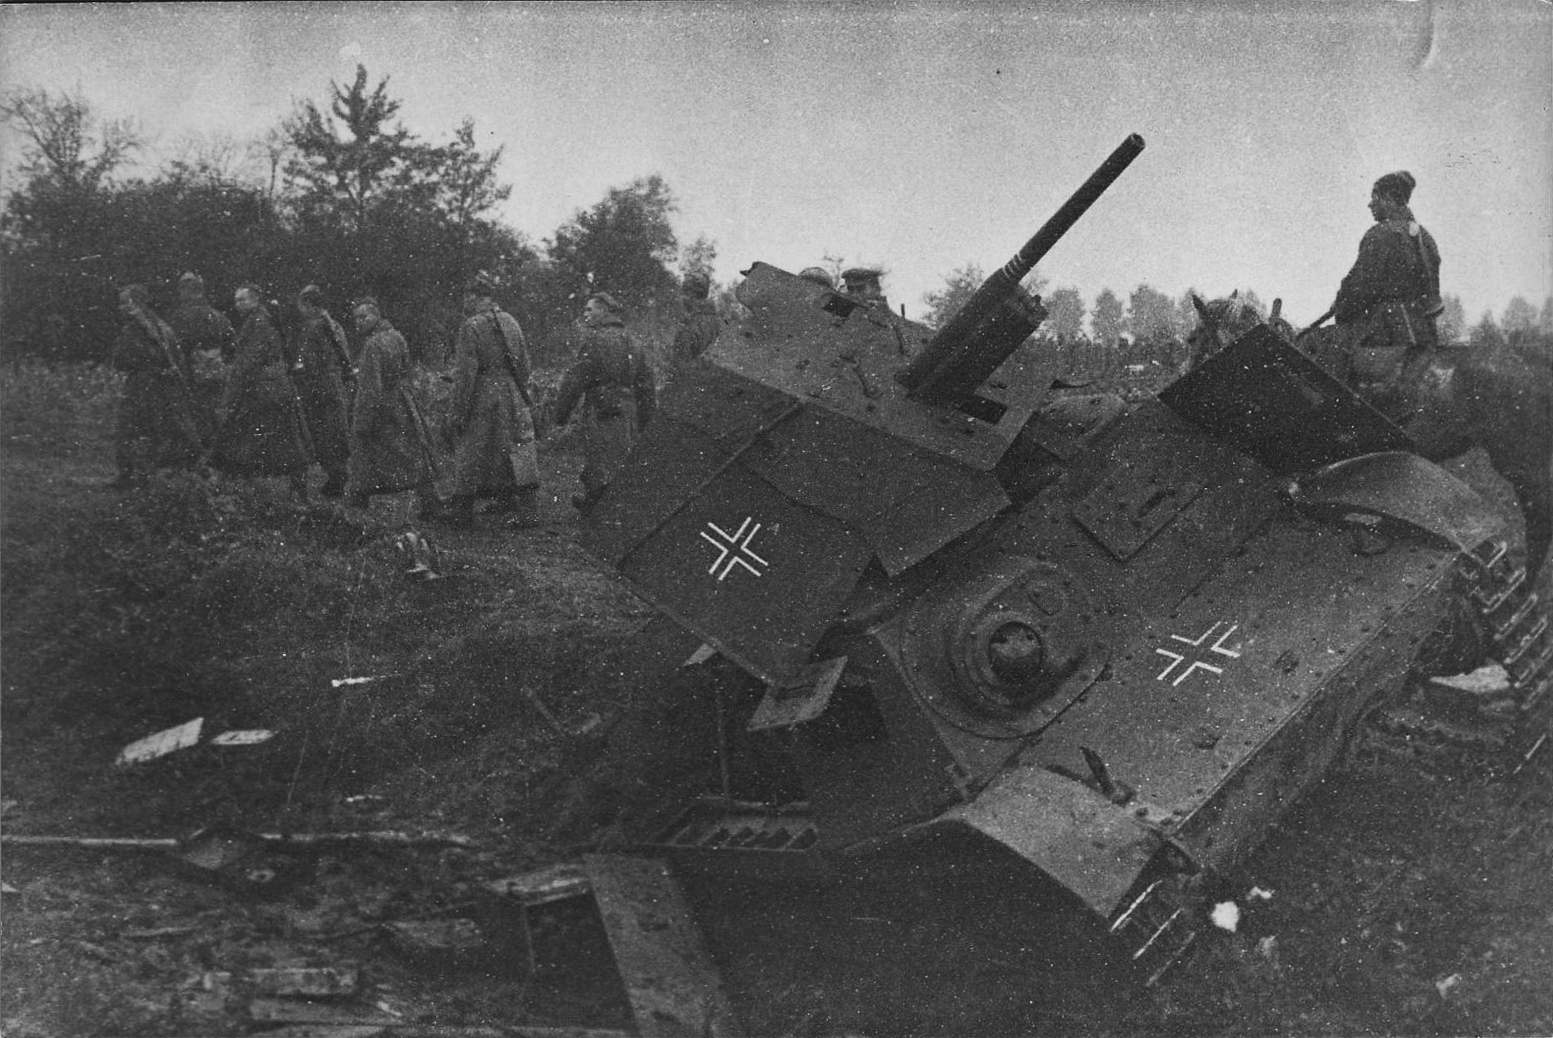 Сколько фашистских танков уничтожил артиллерист